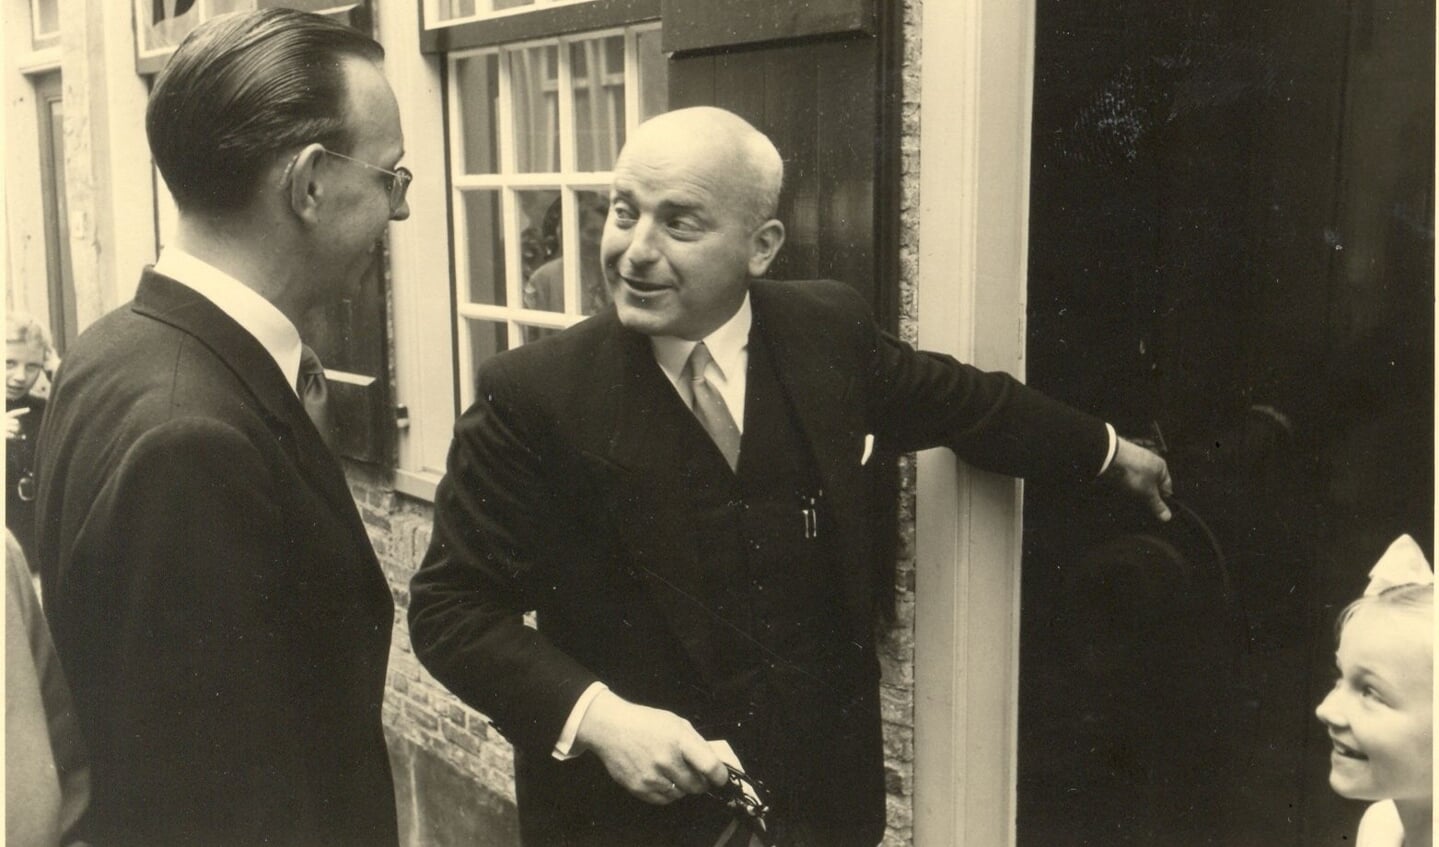 De burgemeester krijgt de sleutel van het museum overhandigd door een dochter van A.J. Kruider. De openingshandeling was op 18 juli 1956.